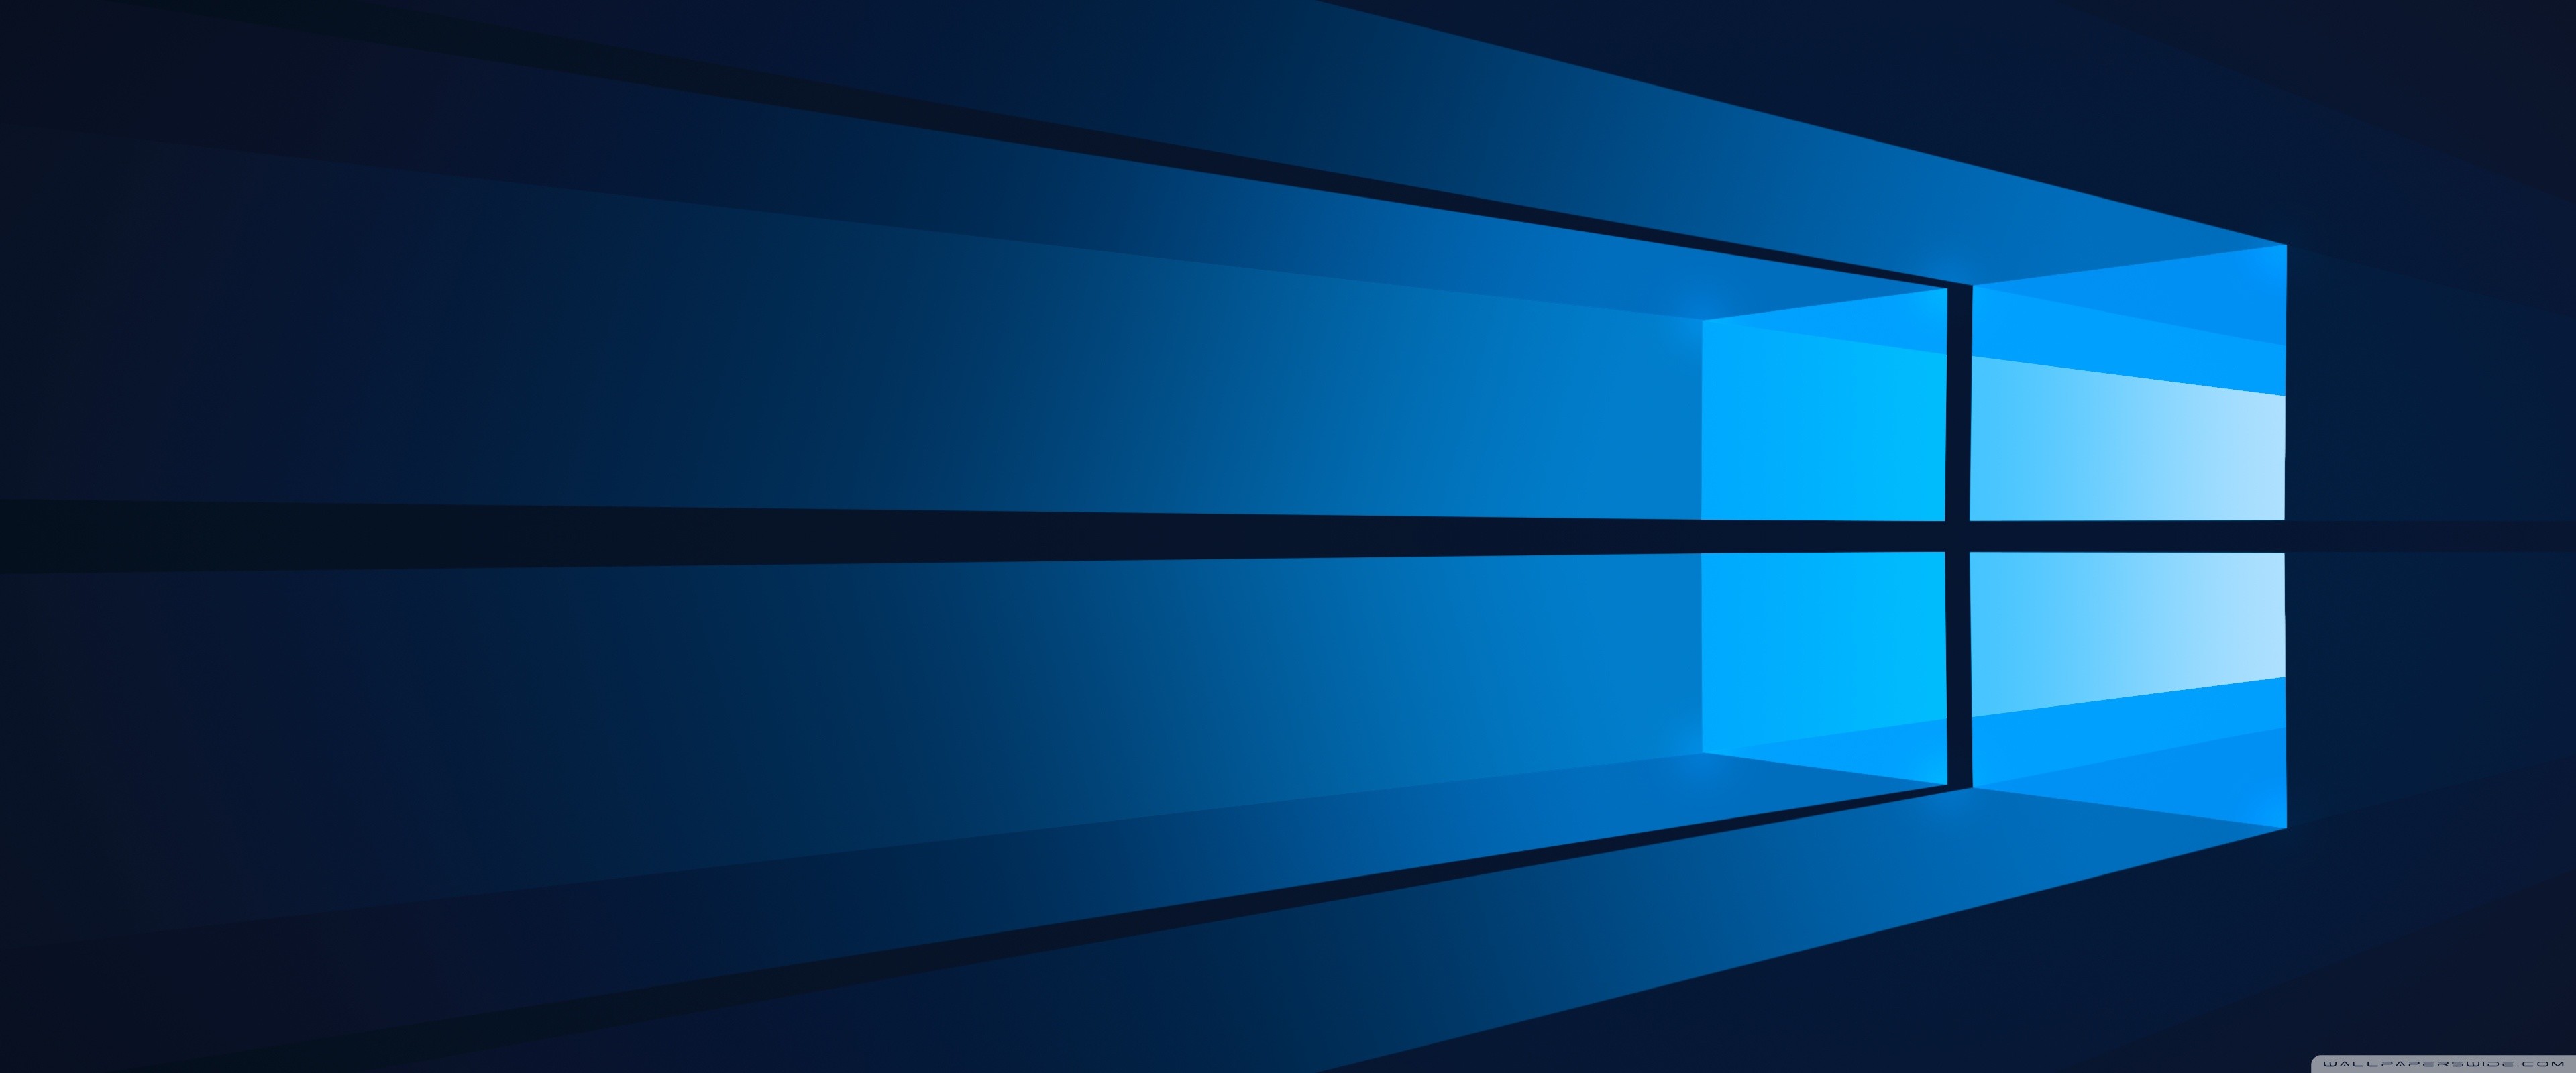 Flat Windows 10 HD desktop wallpaper : Widescreen .